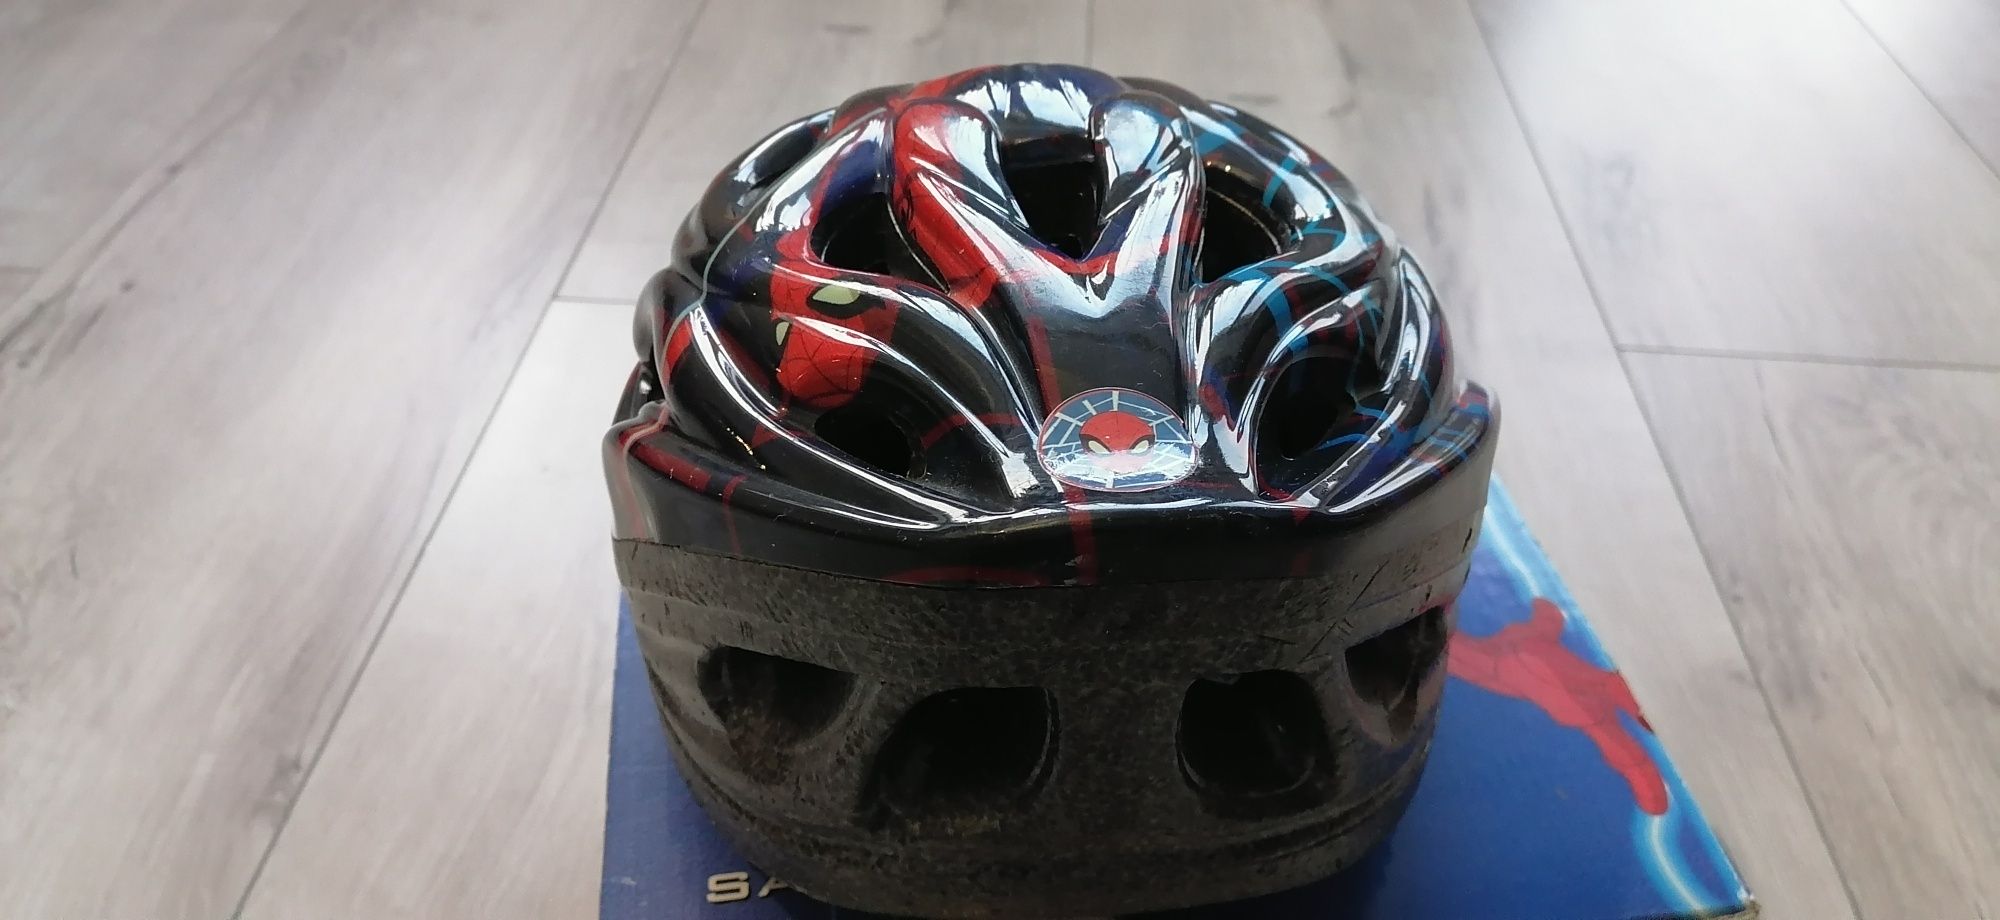 Kask Safety helmet na rower, deskorolek, wrotek.